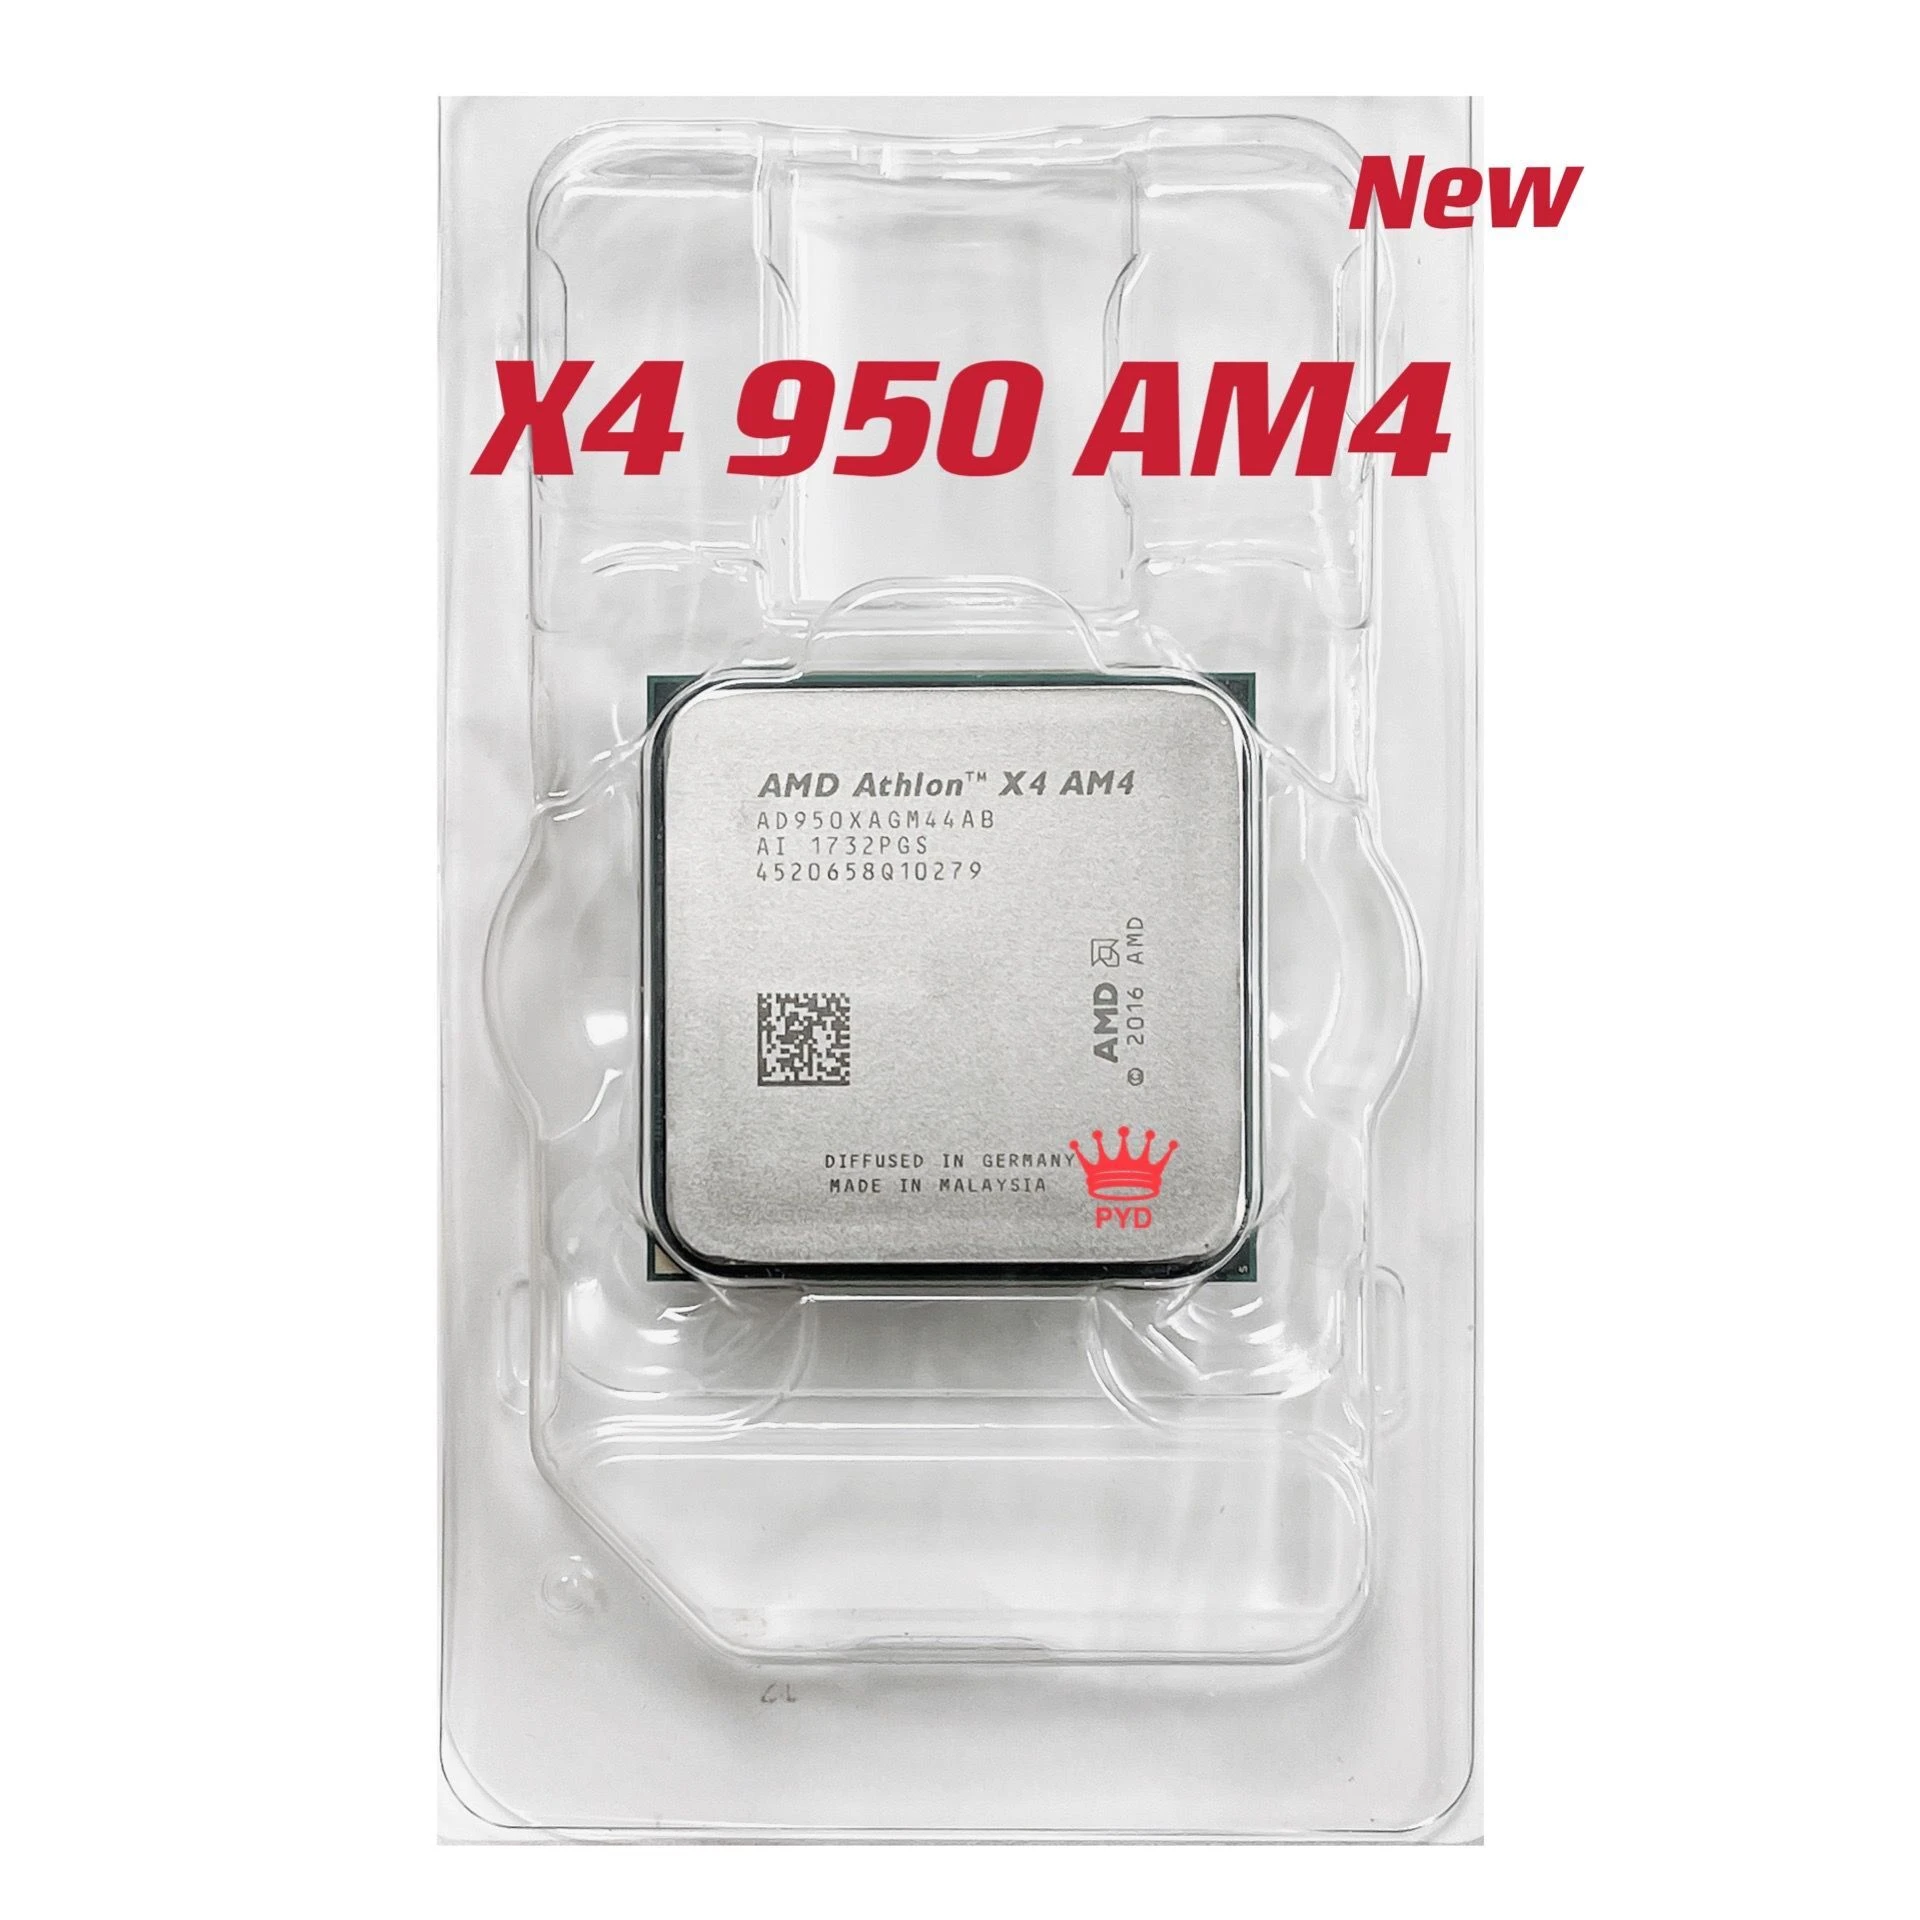 AMD Athlon X4 950 3.5GHz Quad-Core Quad-Thread 28NM 65W CPU Processor YD950XAGM44AB Socket AM4 new without cooler